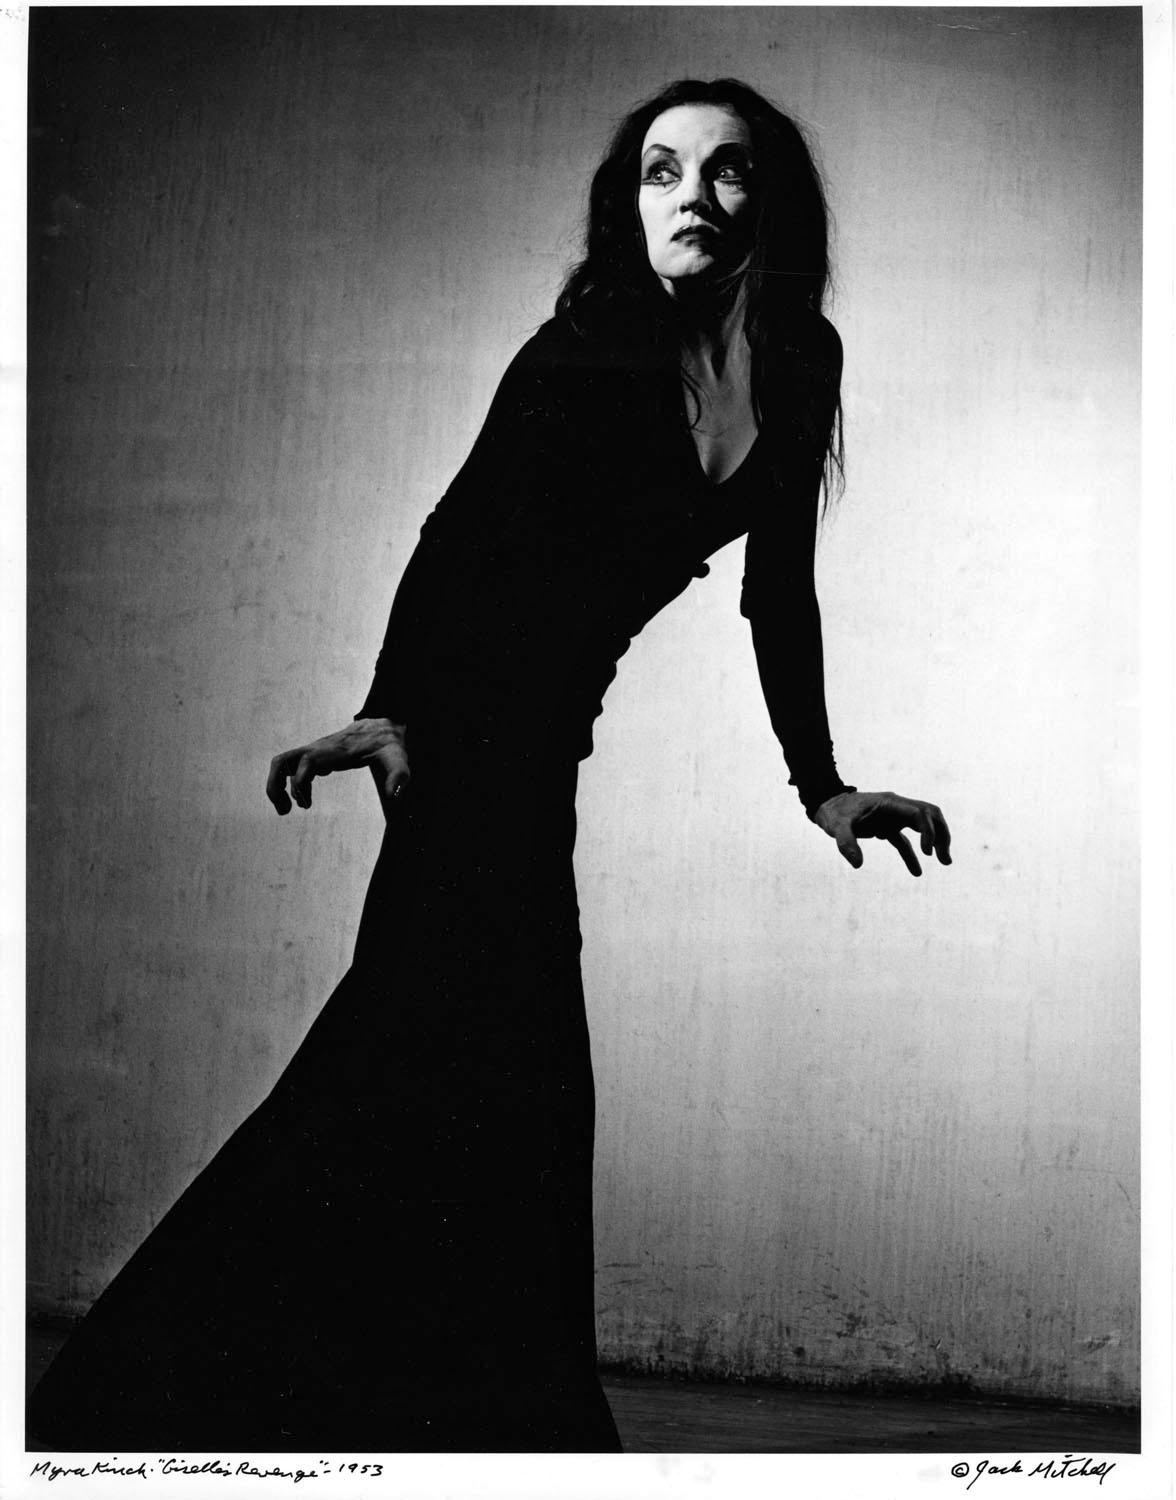 11 x 14" alte Silbergelatinefotografie der Tänzerin/Choreografin Myra Kinch in "Giselle's Revenge" in Jacob's Pillow, 1953. Verso auf dem Druck signiert. Kommt direkt aus dem Jack Mitchell Archiv mit einem Echtheitszertifikat. 

Jack Mitchells